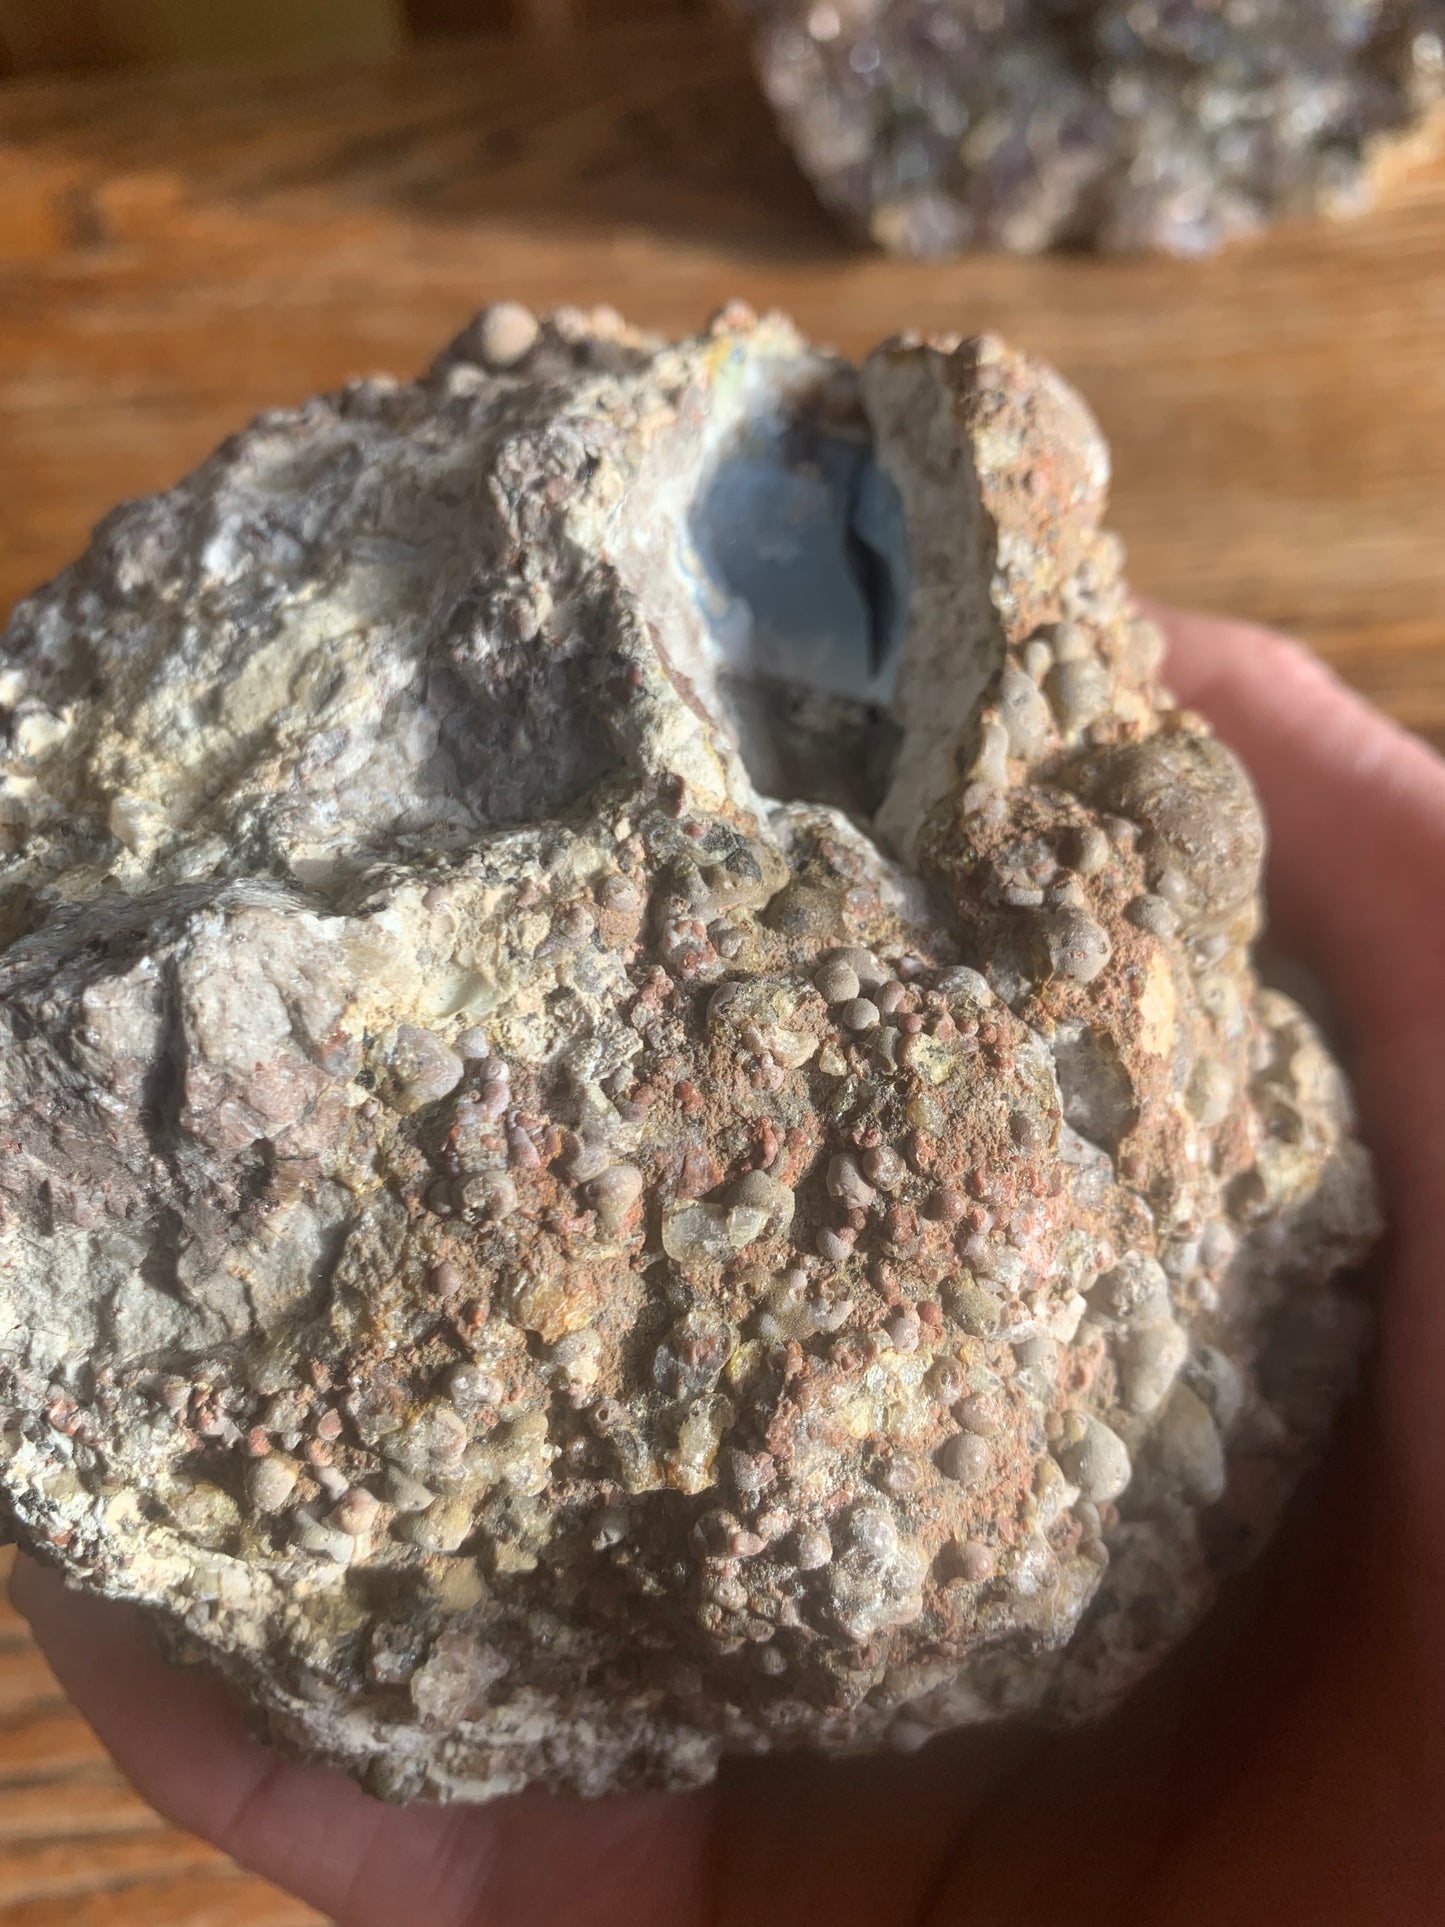 Blue Opal and calcite Boulder